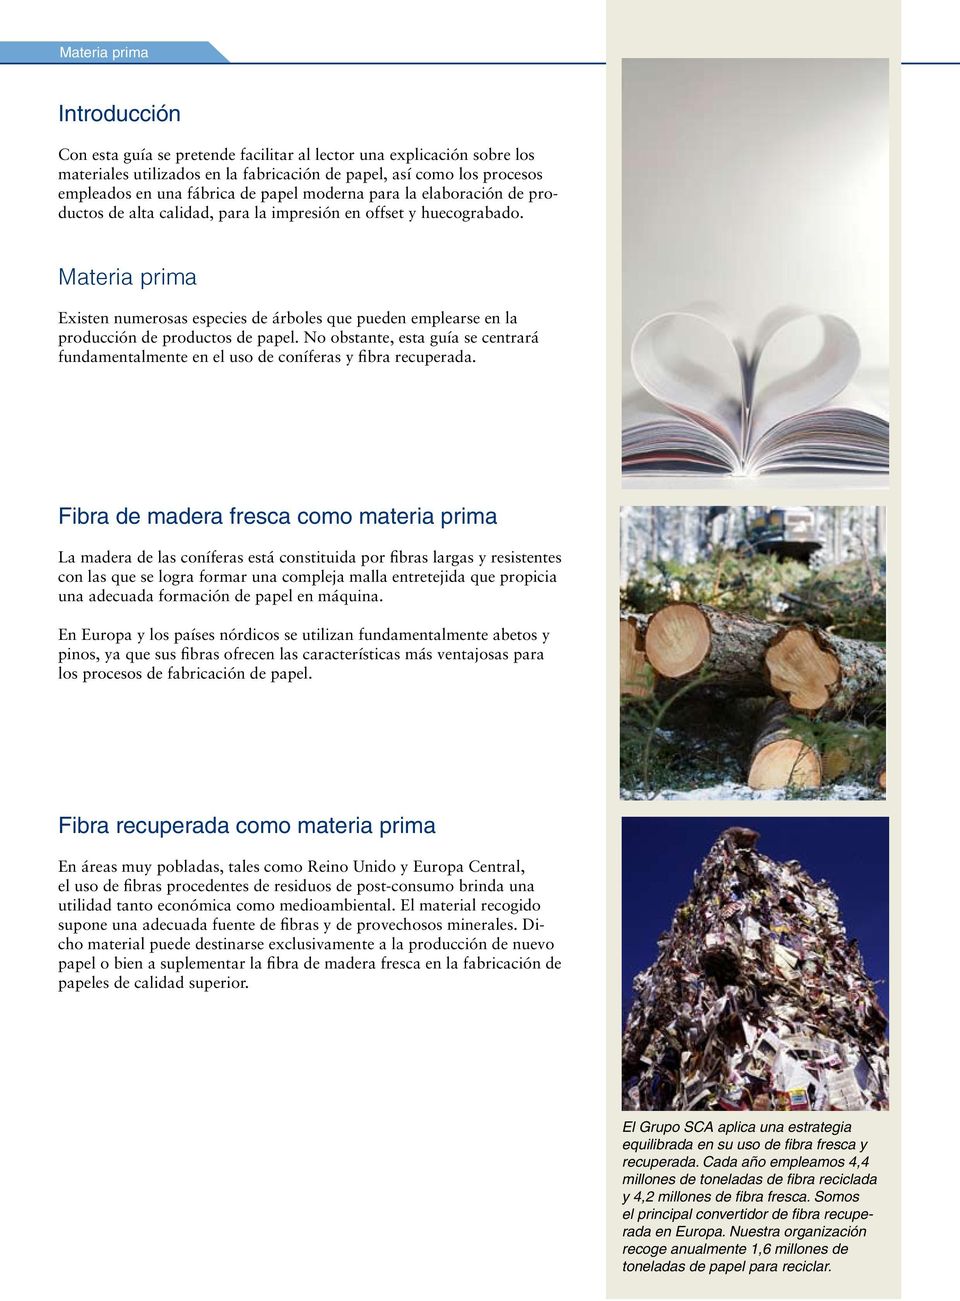 Materia prima Existen numerosas especies de árboles que pueden emplearse en la producción de productos de papel.